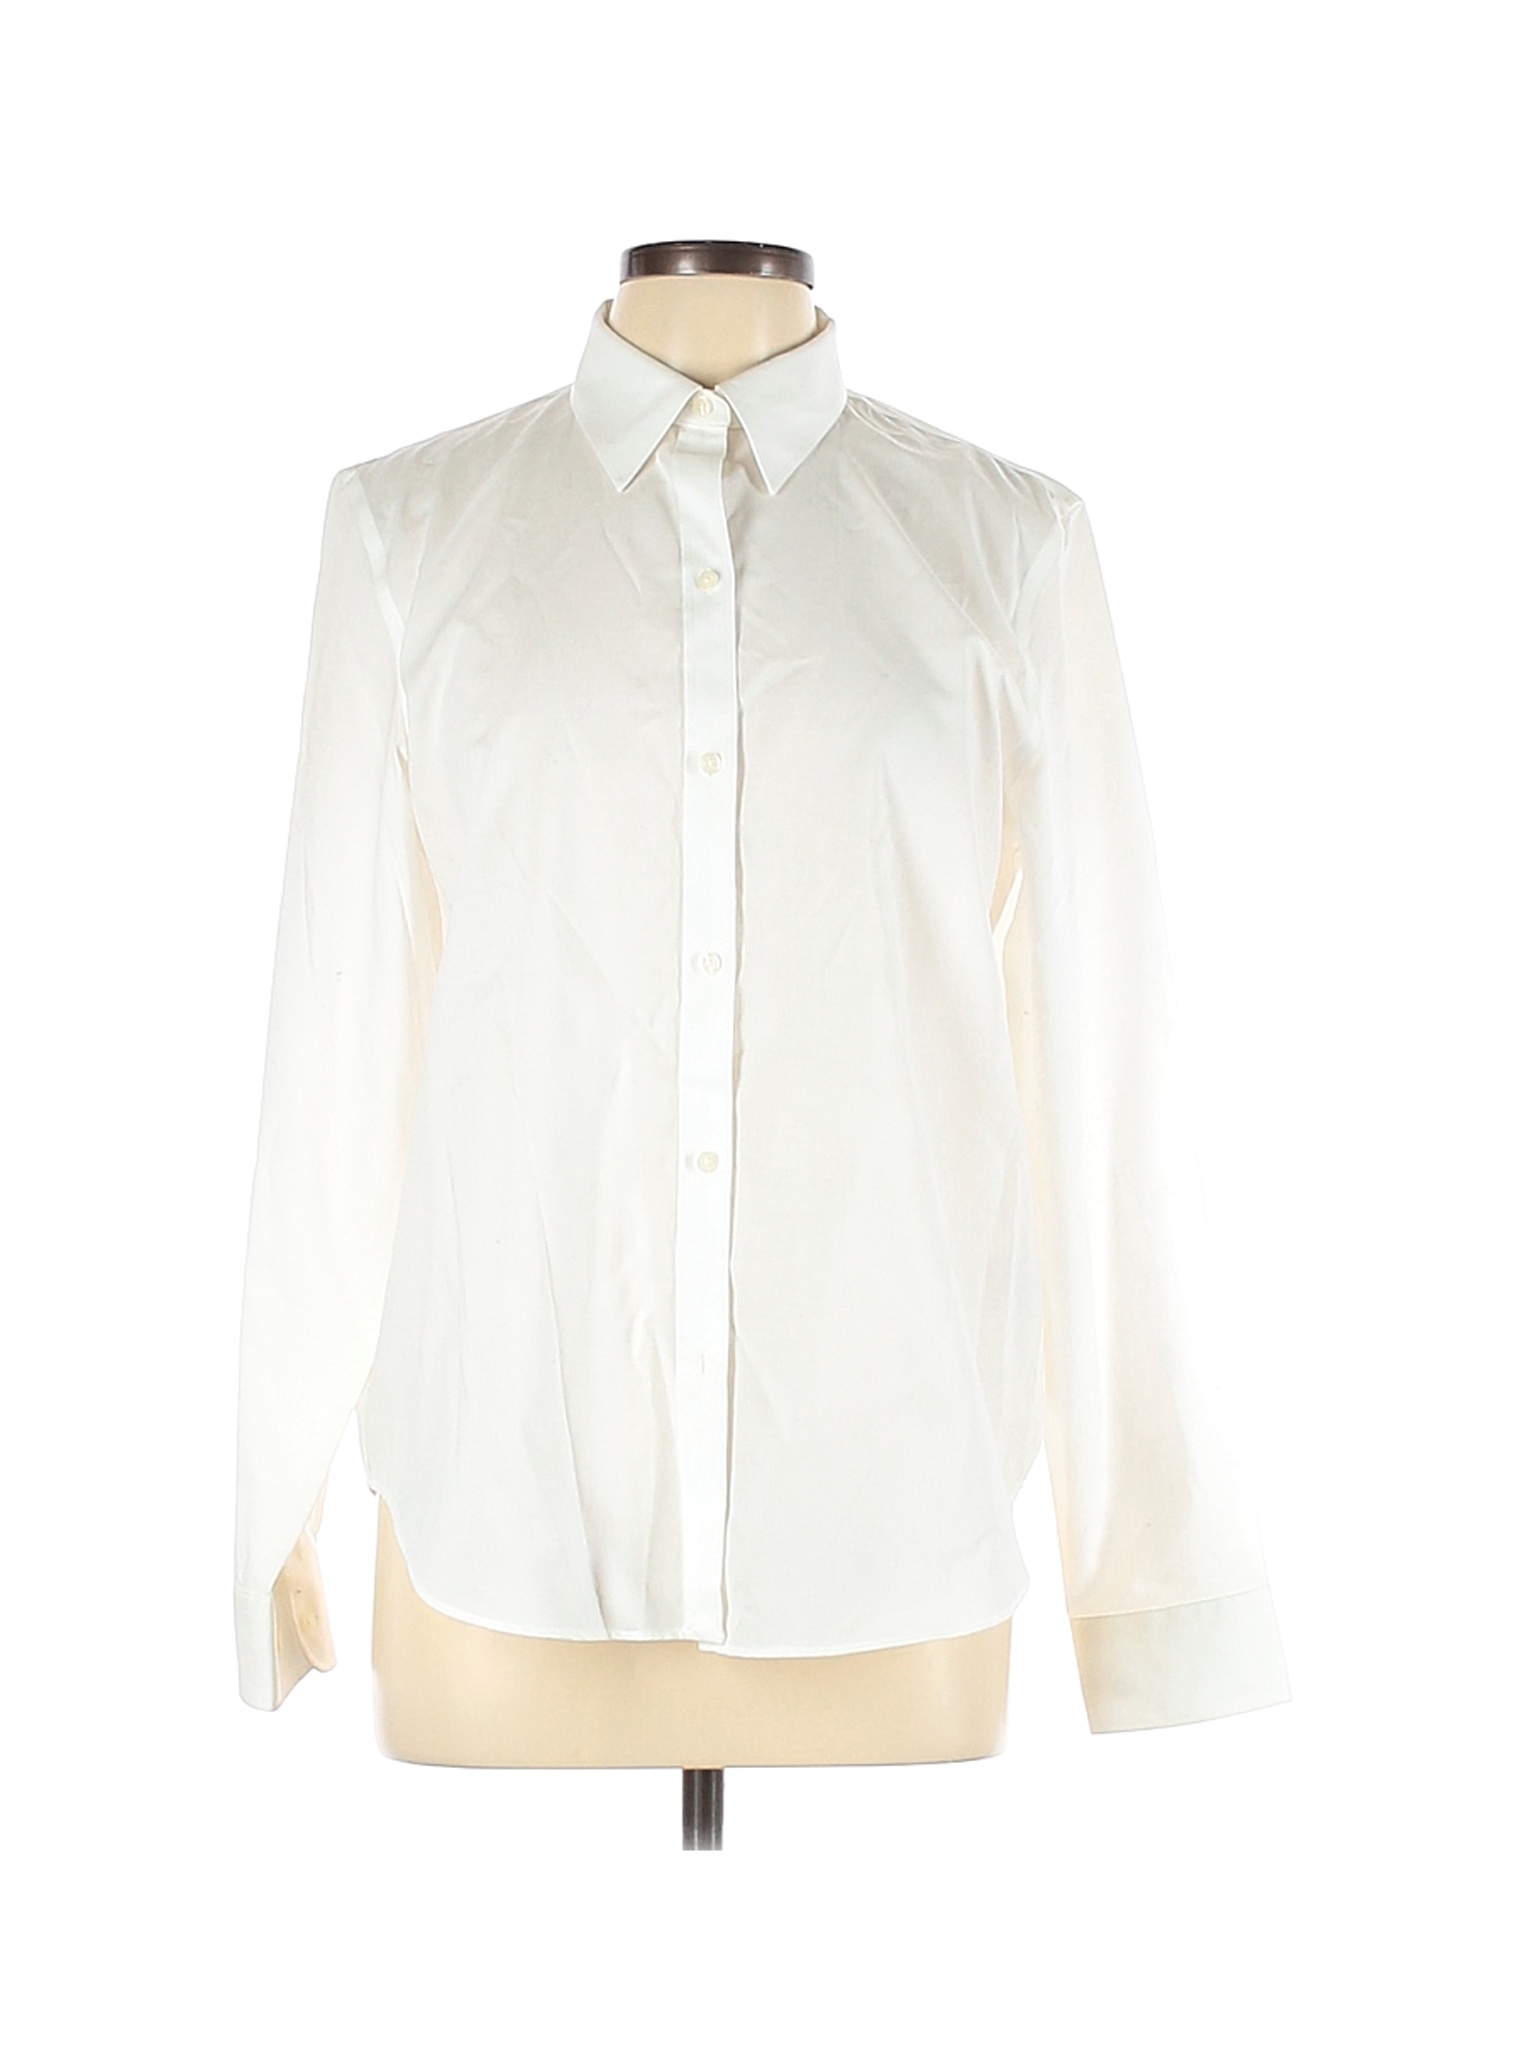 Chaps Women White Long Sleeve Button-Down Shirt L | eBay